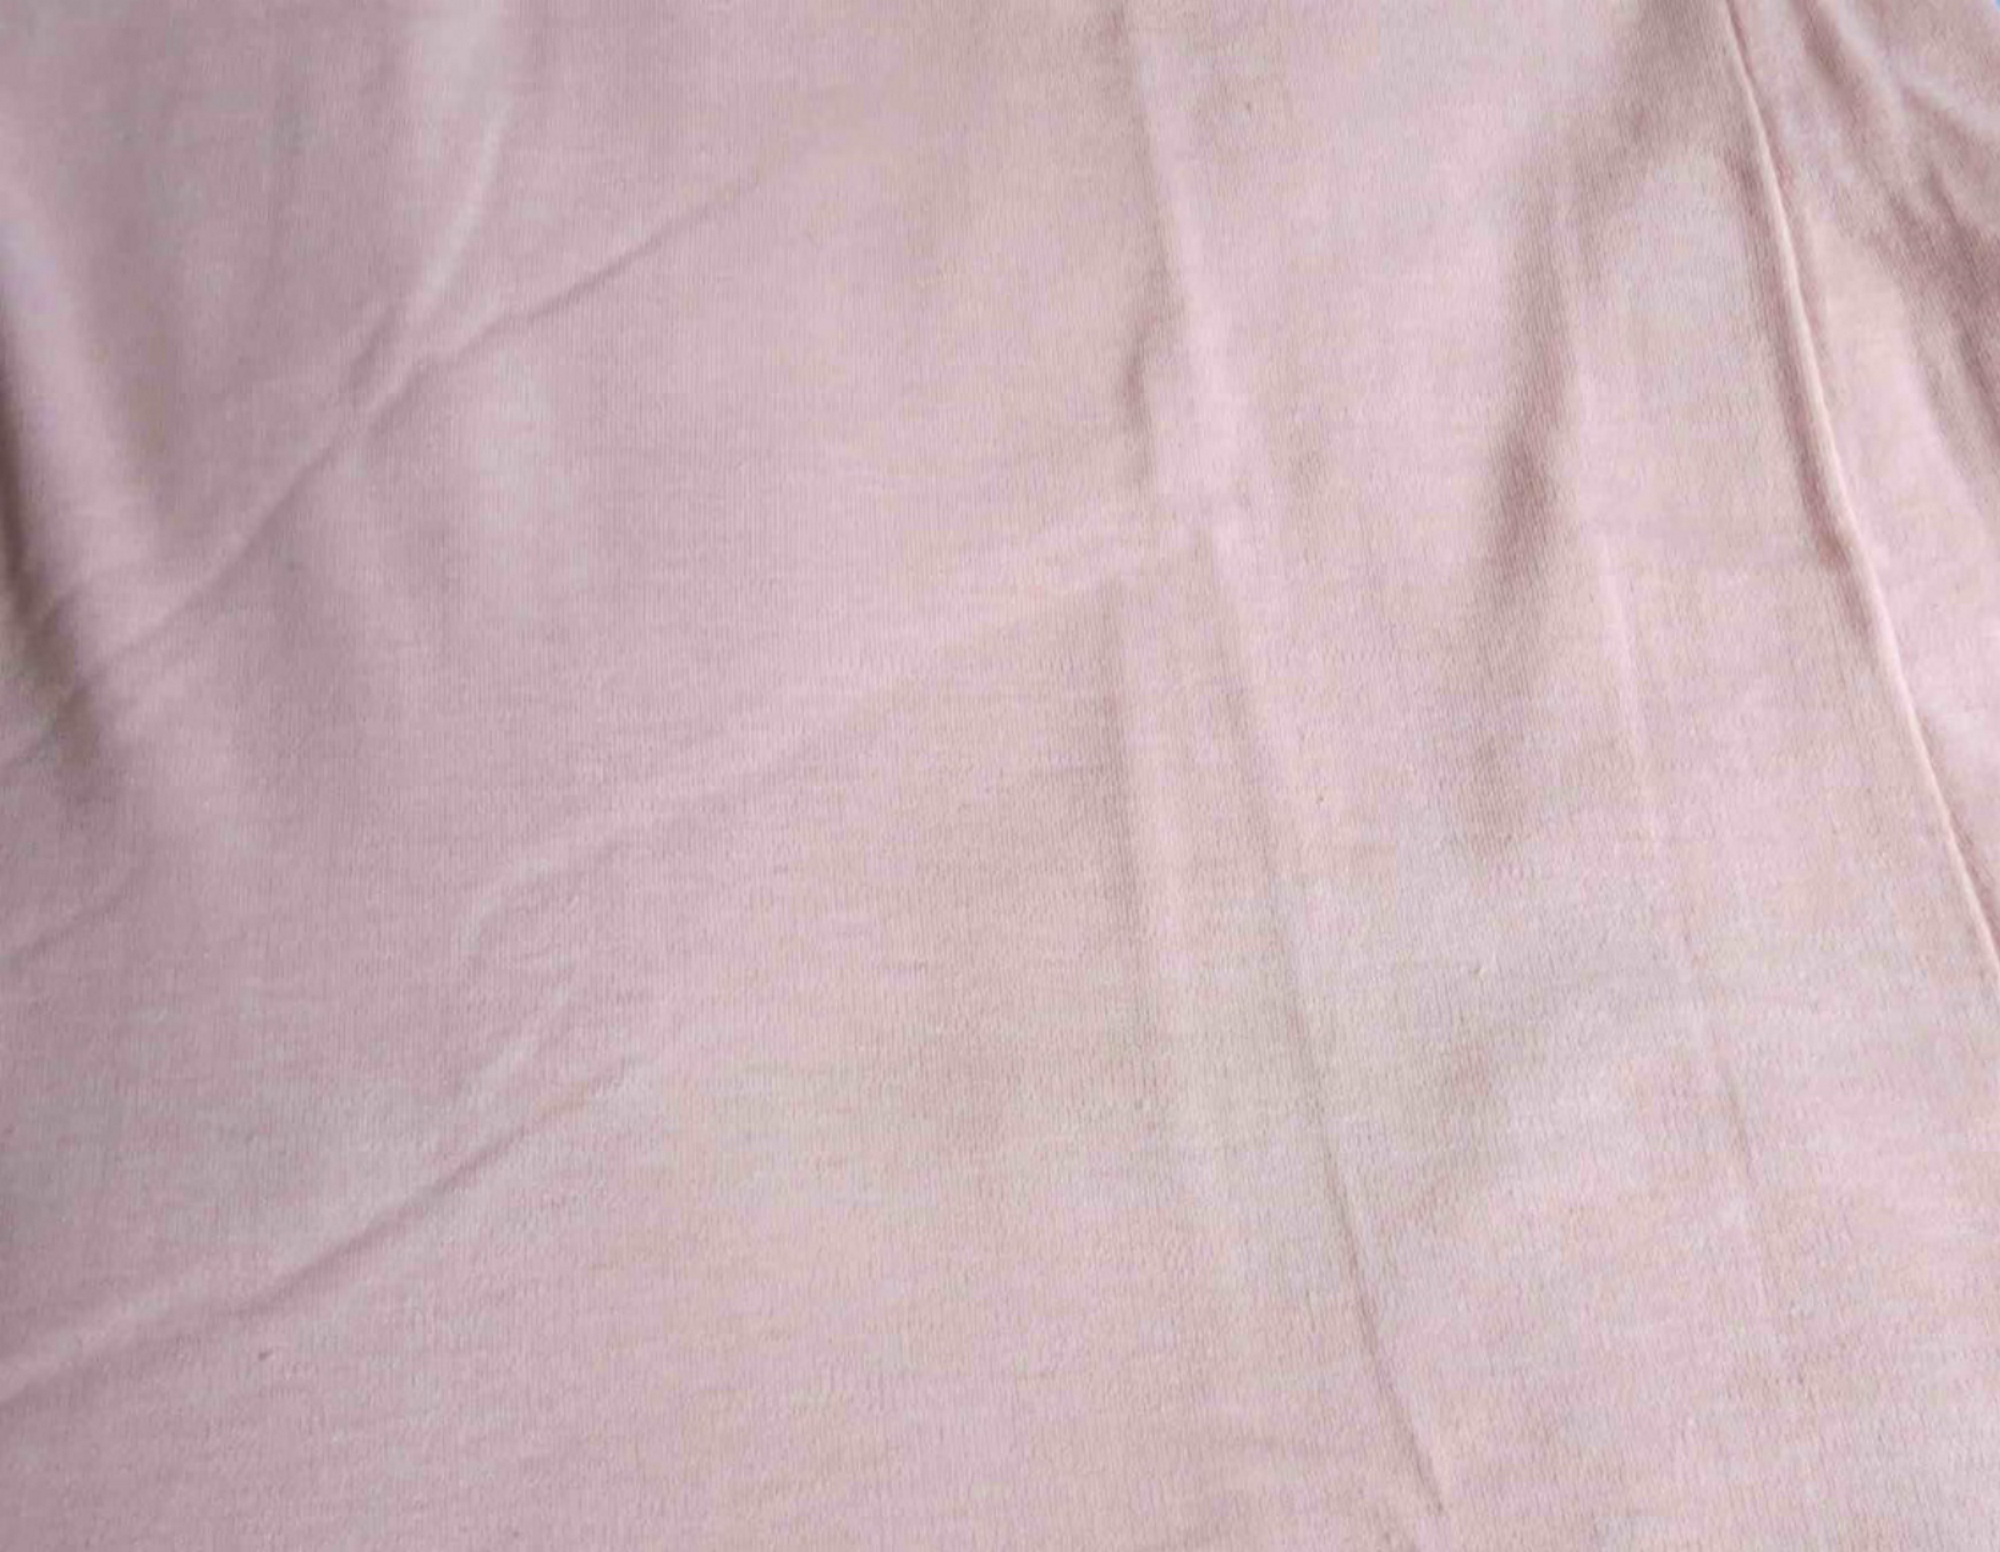 vintage 1940s pink cotton interlock slip nightgown dress